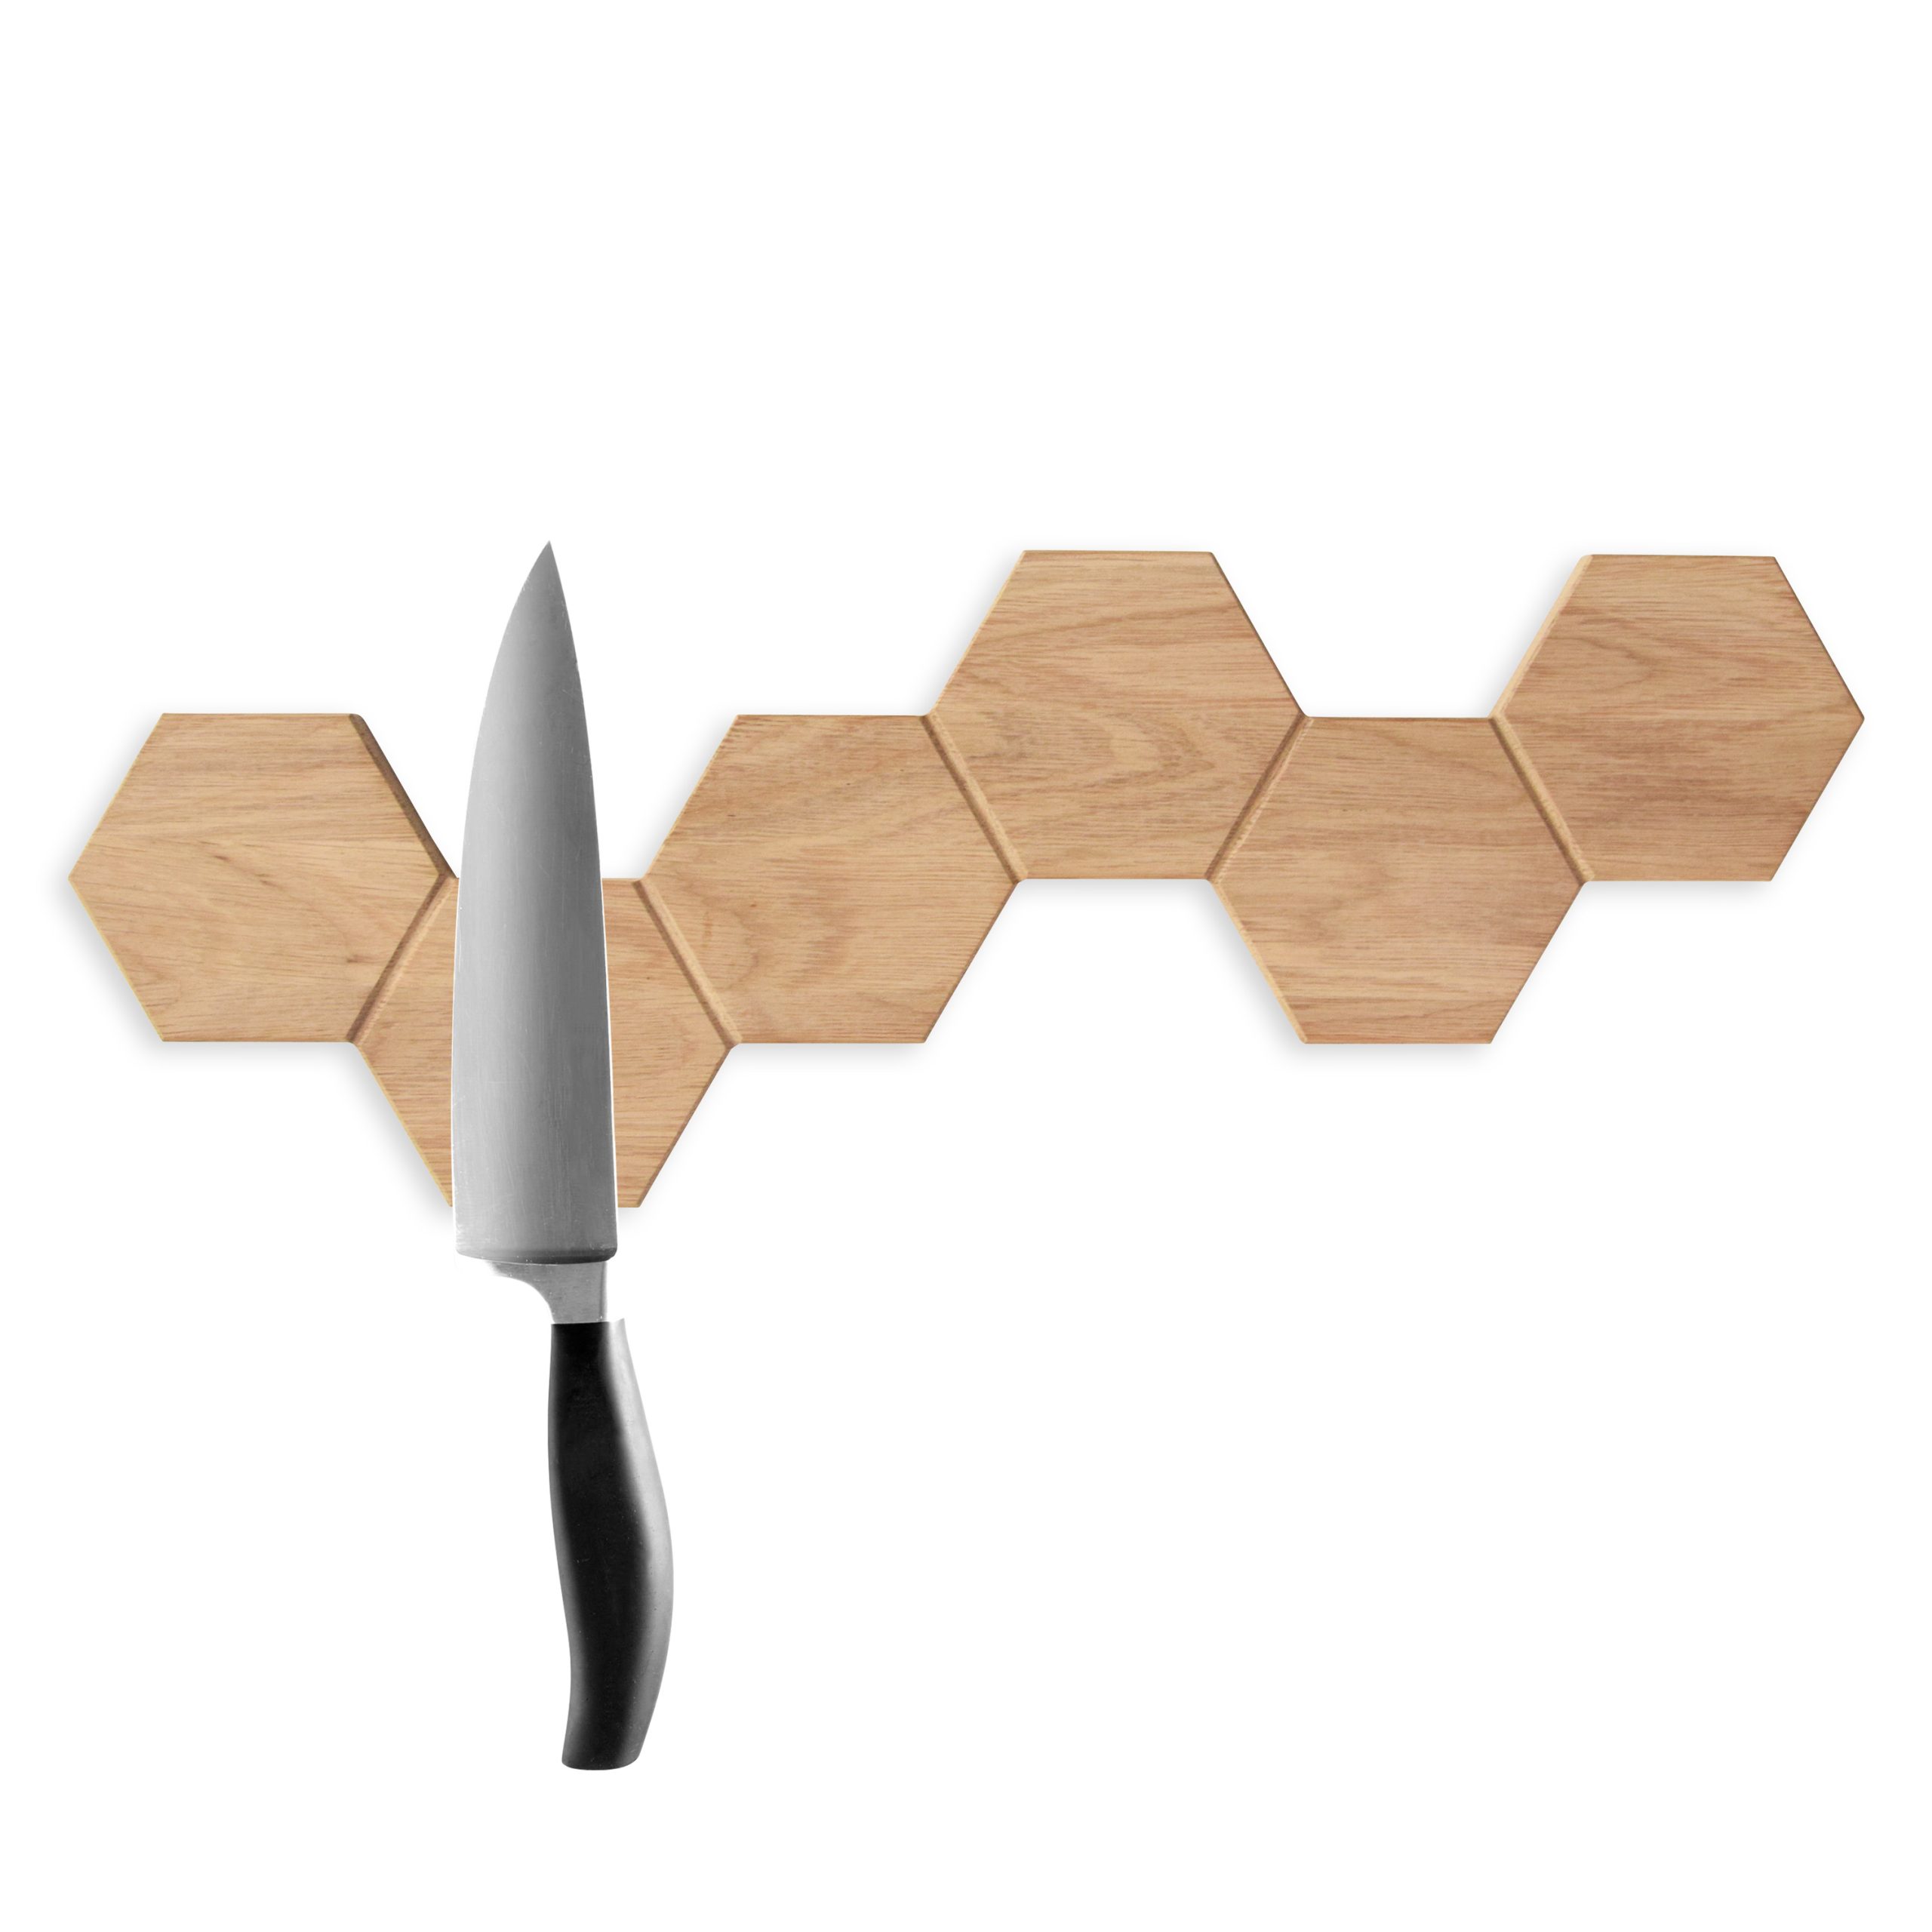 Hexagon knivmagnet i eg (1. sortering, olieret)